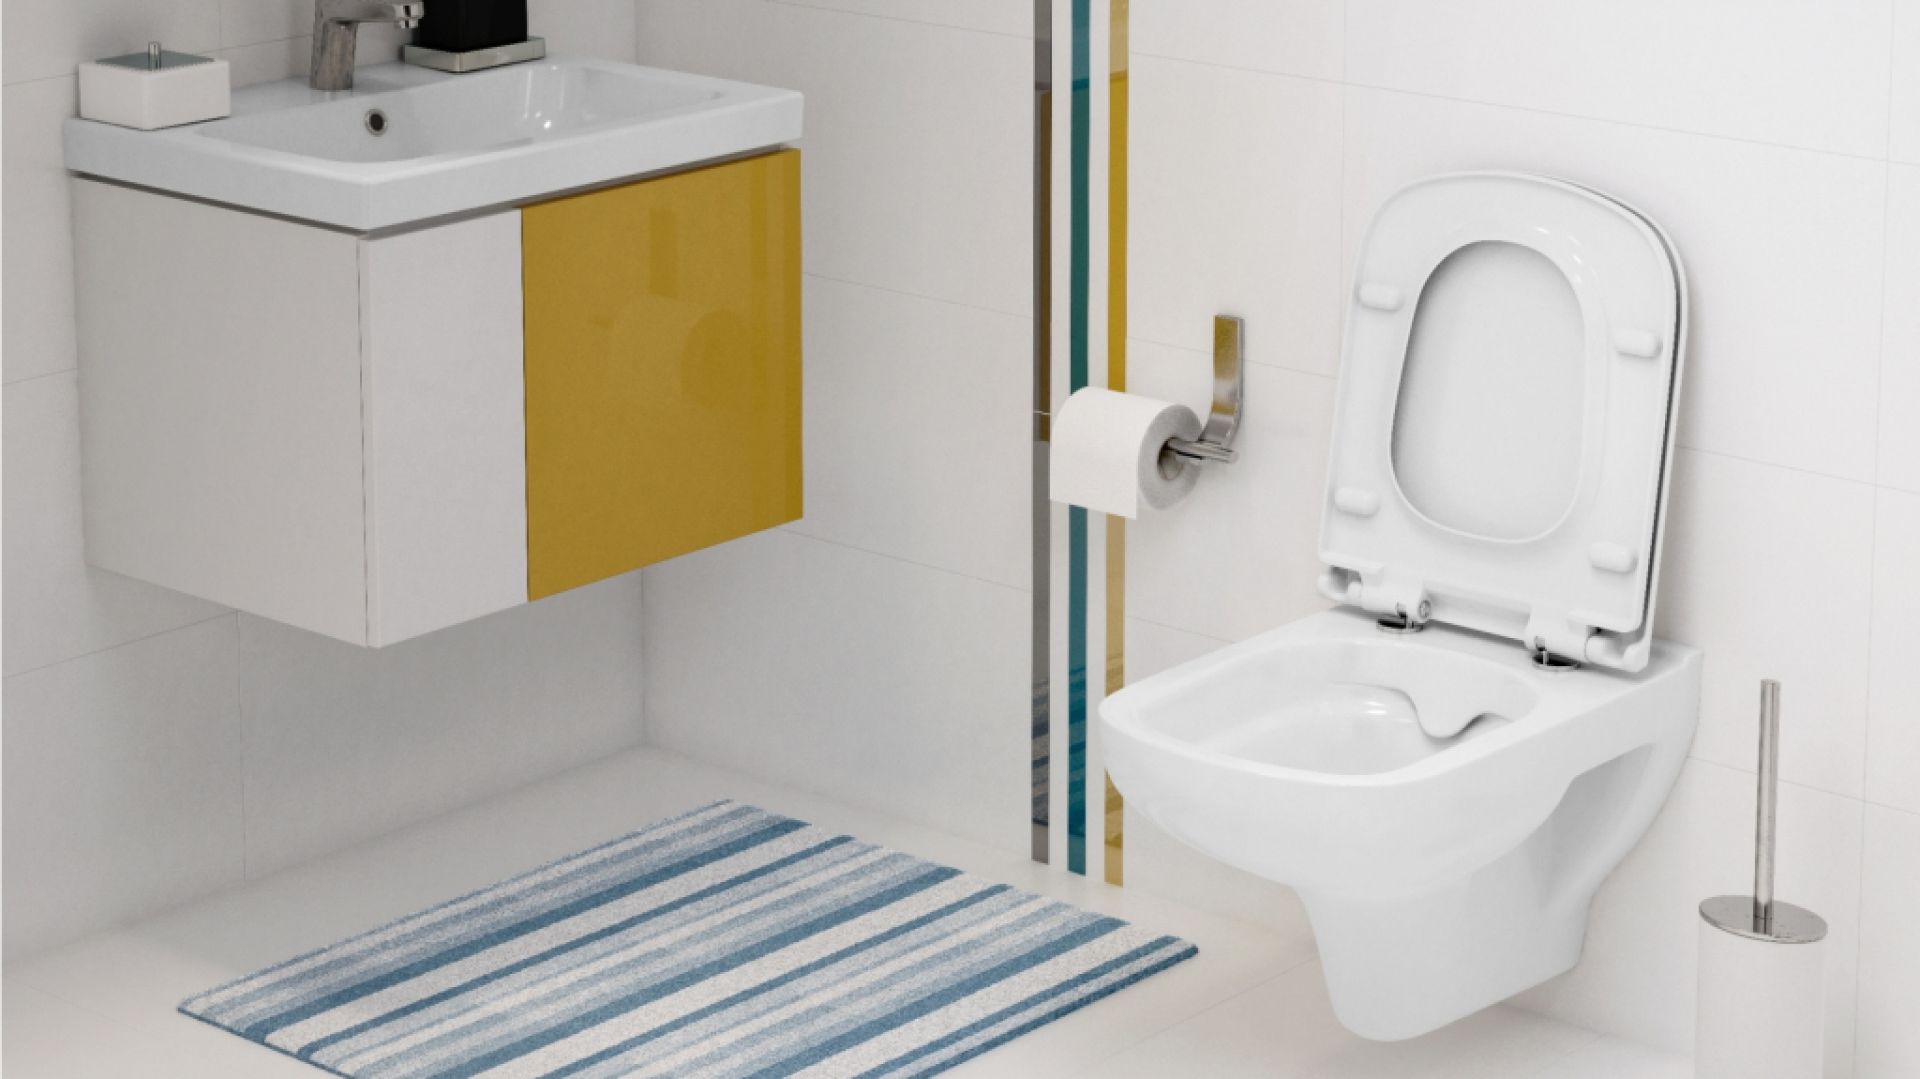 Postaw na designerskie rozwiązania w łazience